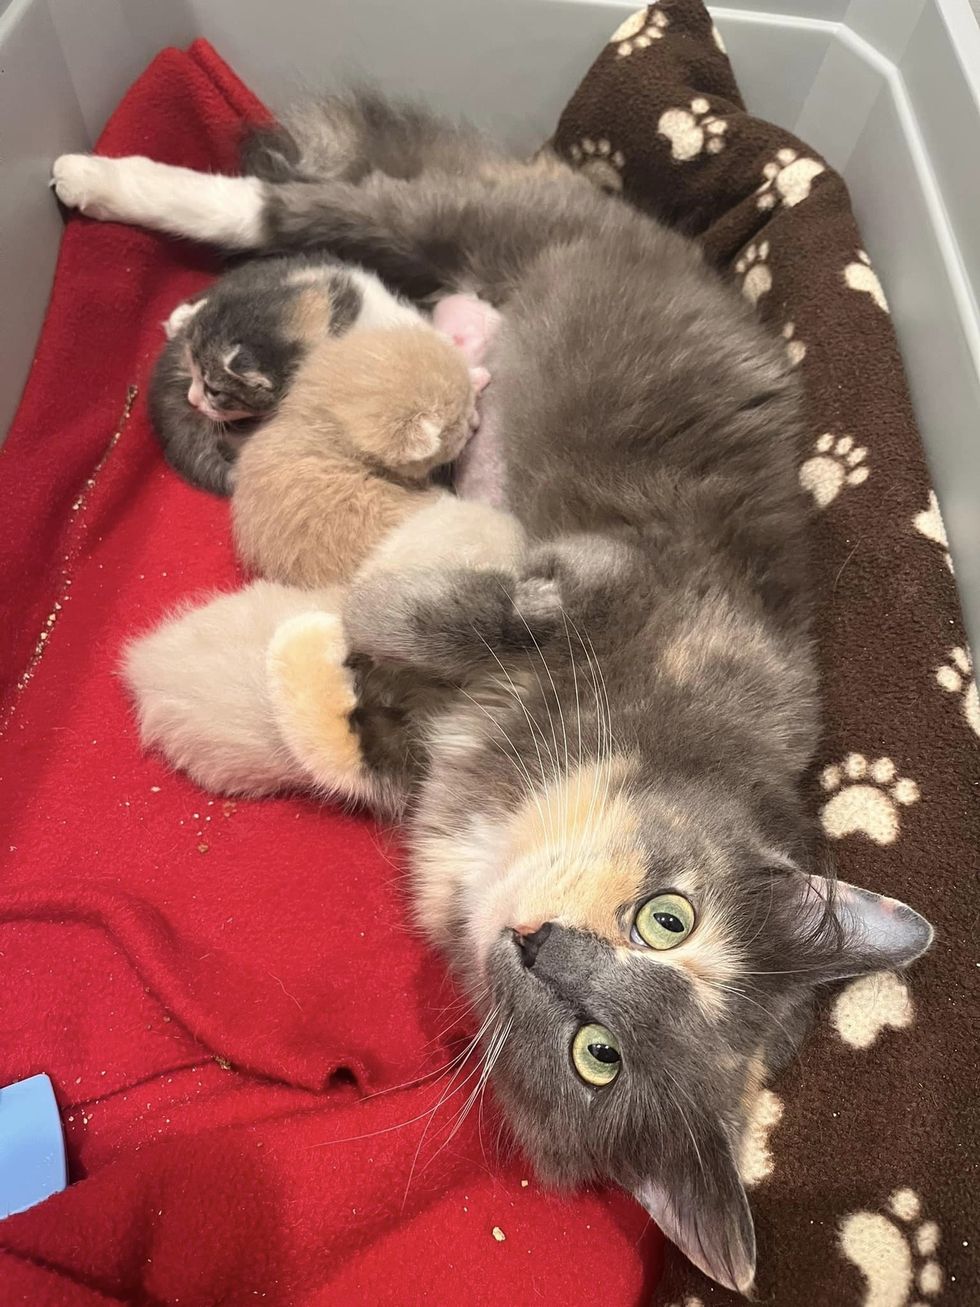 sweet calico cat nursing kittens